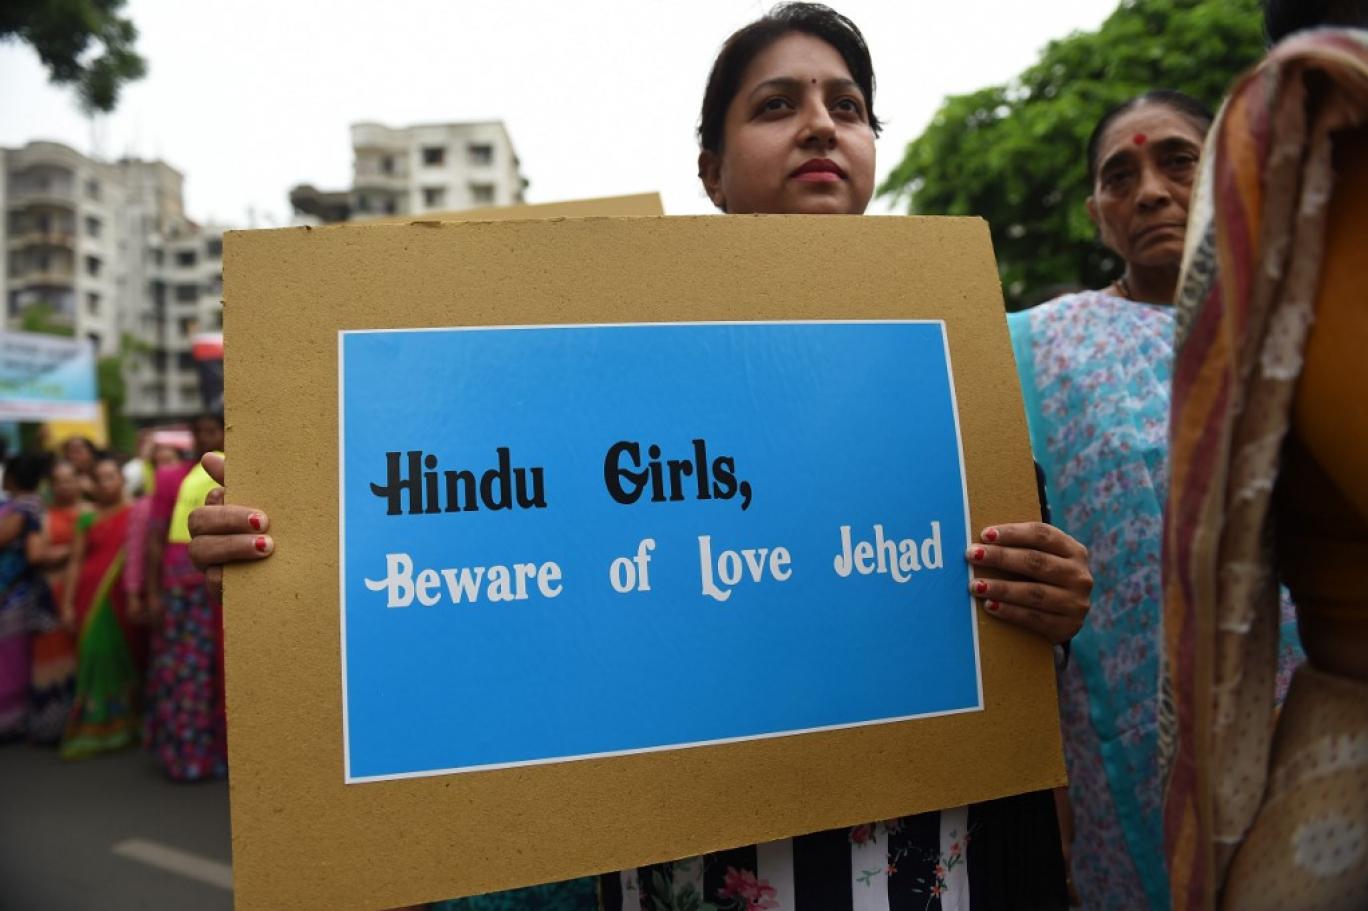 انتہا پسند ہندوؤں کو شدید دھچکا، بھارتی ہائیکورٹ نے ''لو جہاد''کیس خارج کر دیا